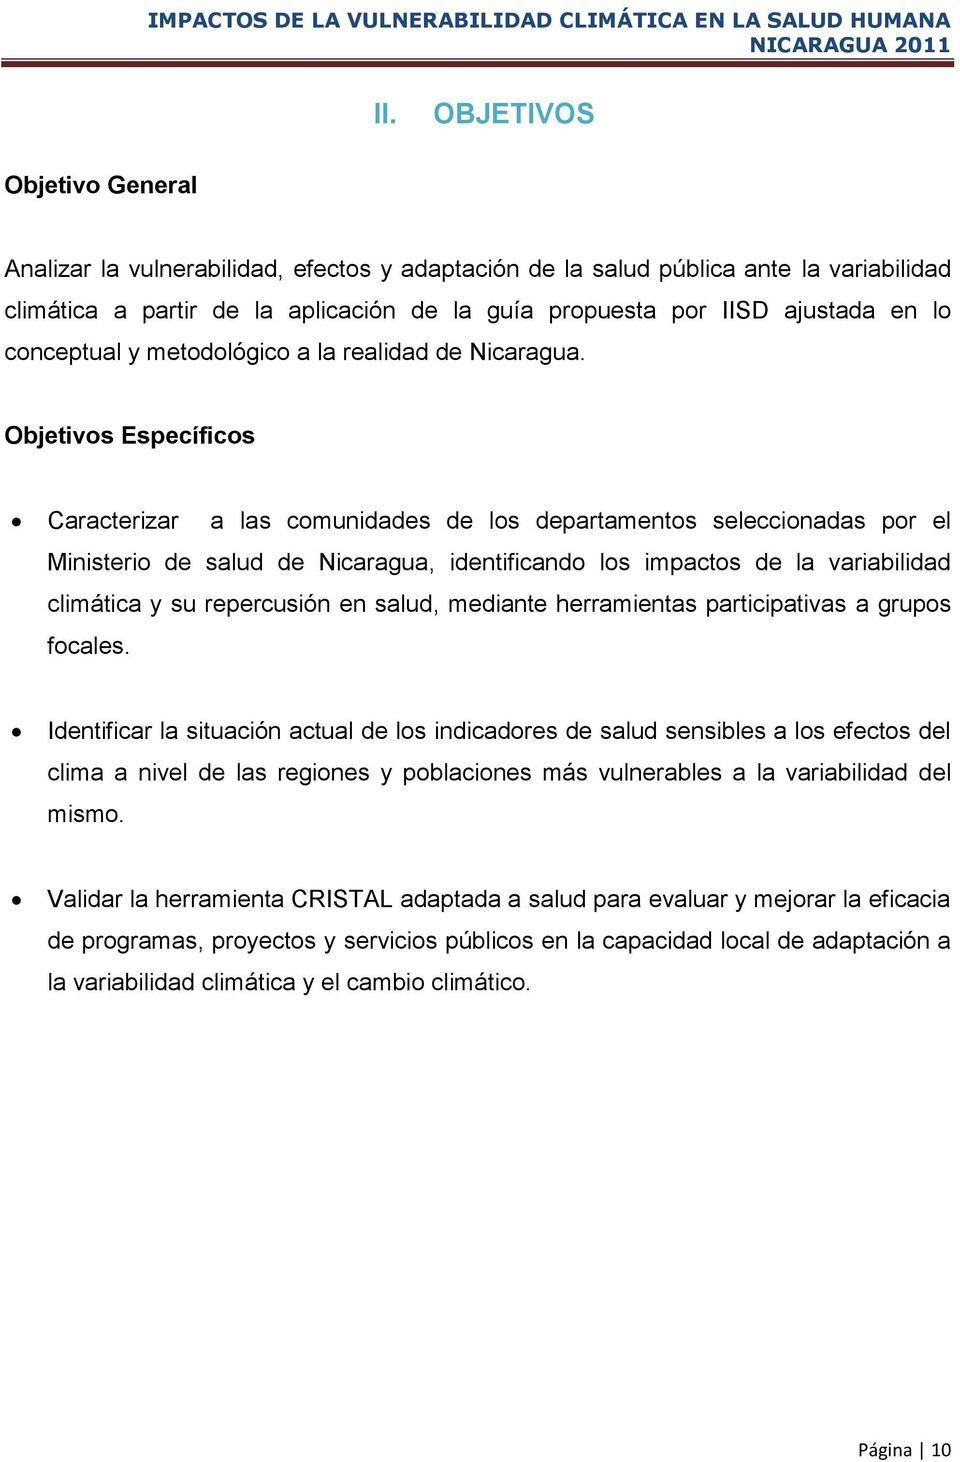 Objetivos Específicos Caracterizar a las comunidades de los departamentos seleccionadas por el Ministerio de salud de Nicaragua, identificando los impactos de la variabilidad climática y su